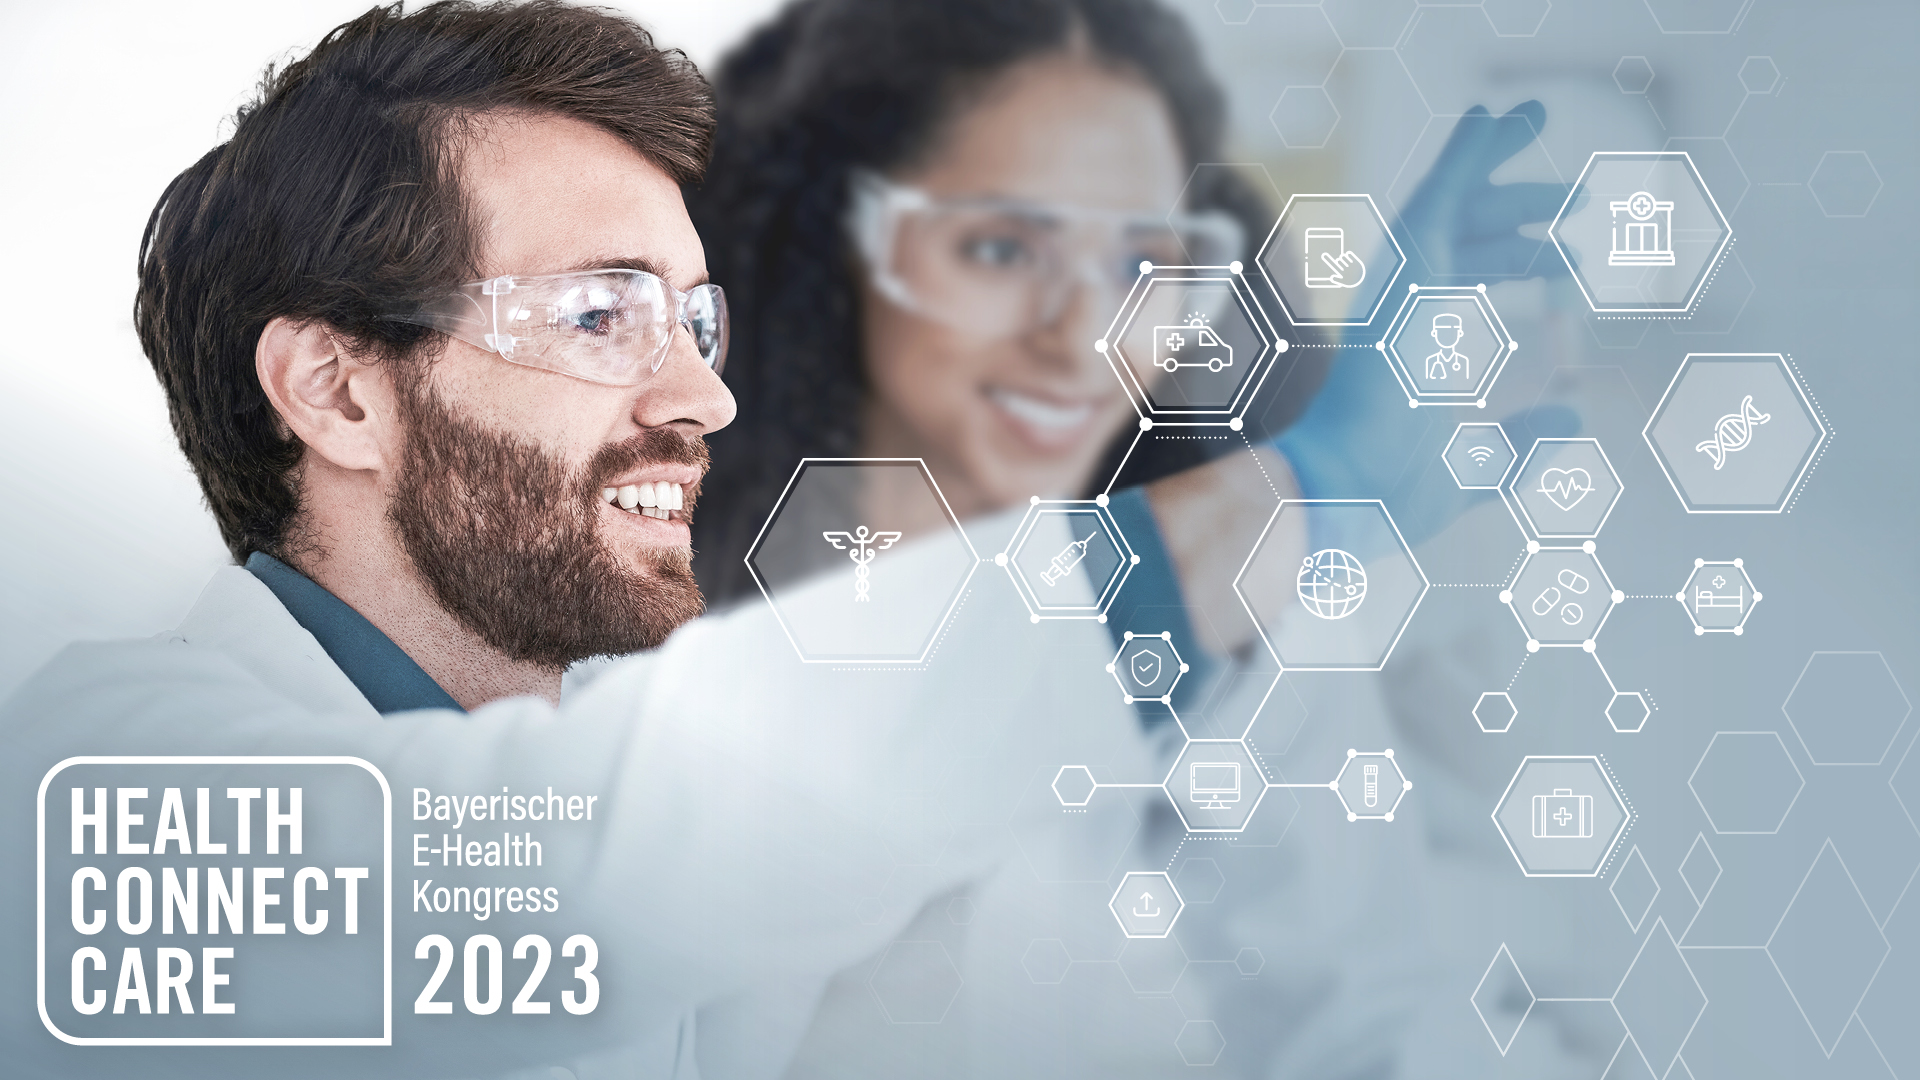 Bayerischer E-Health Kongress 2023 #ConnectHealthCare